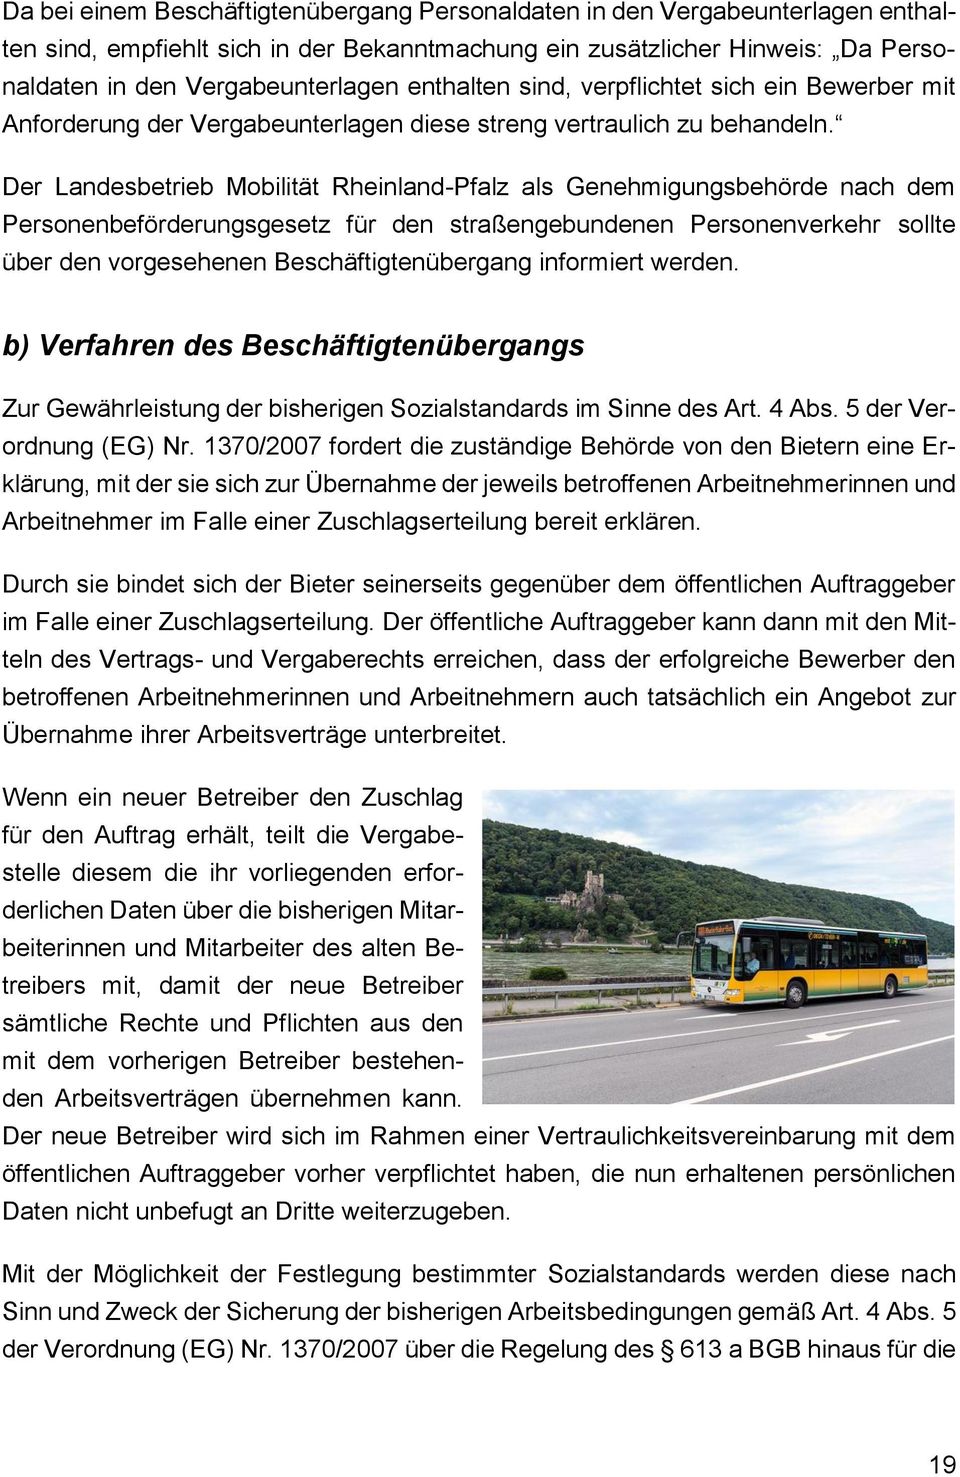 Der Landesbetrieb Mobilität Rheinland-Pfalz als Genehmigungsbehörde nach dem Personenbeförderungsgesetz für den straßengebundenen Personenverkehr sollte über den vorgesehenen Beschäftigtenübergang